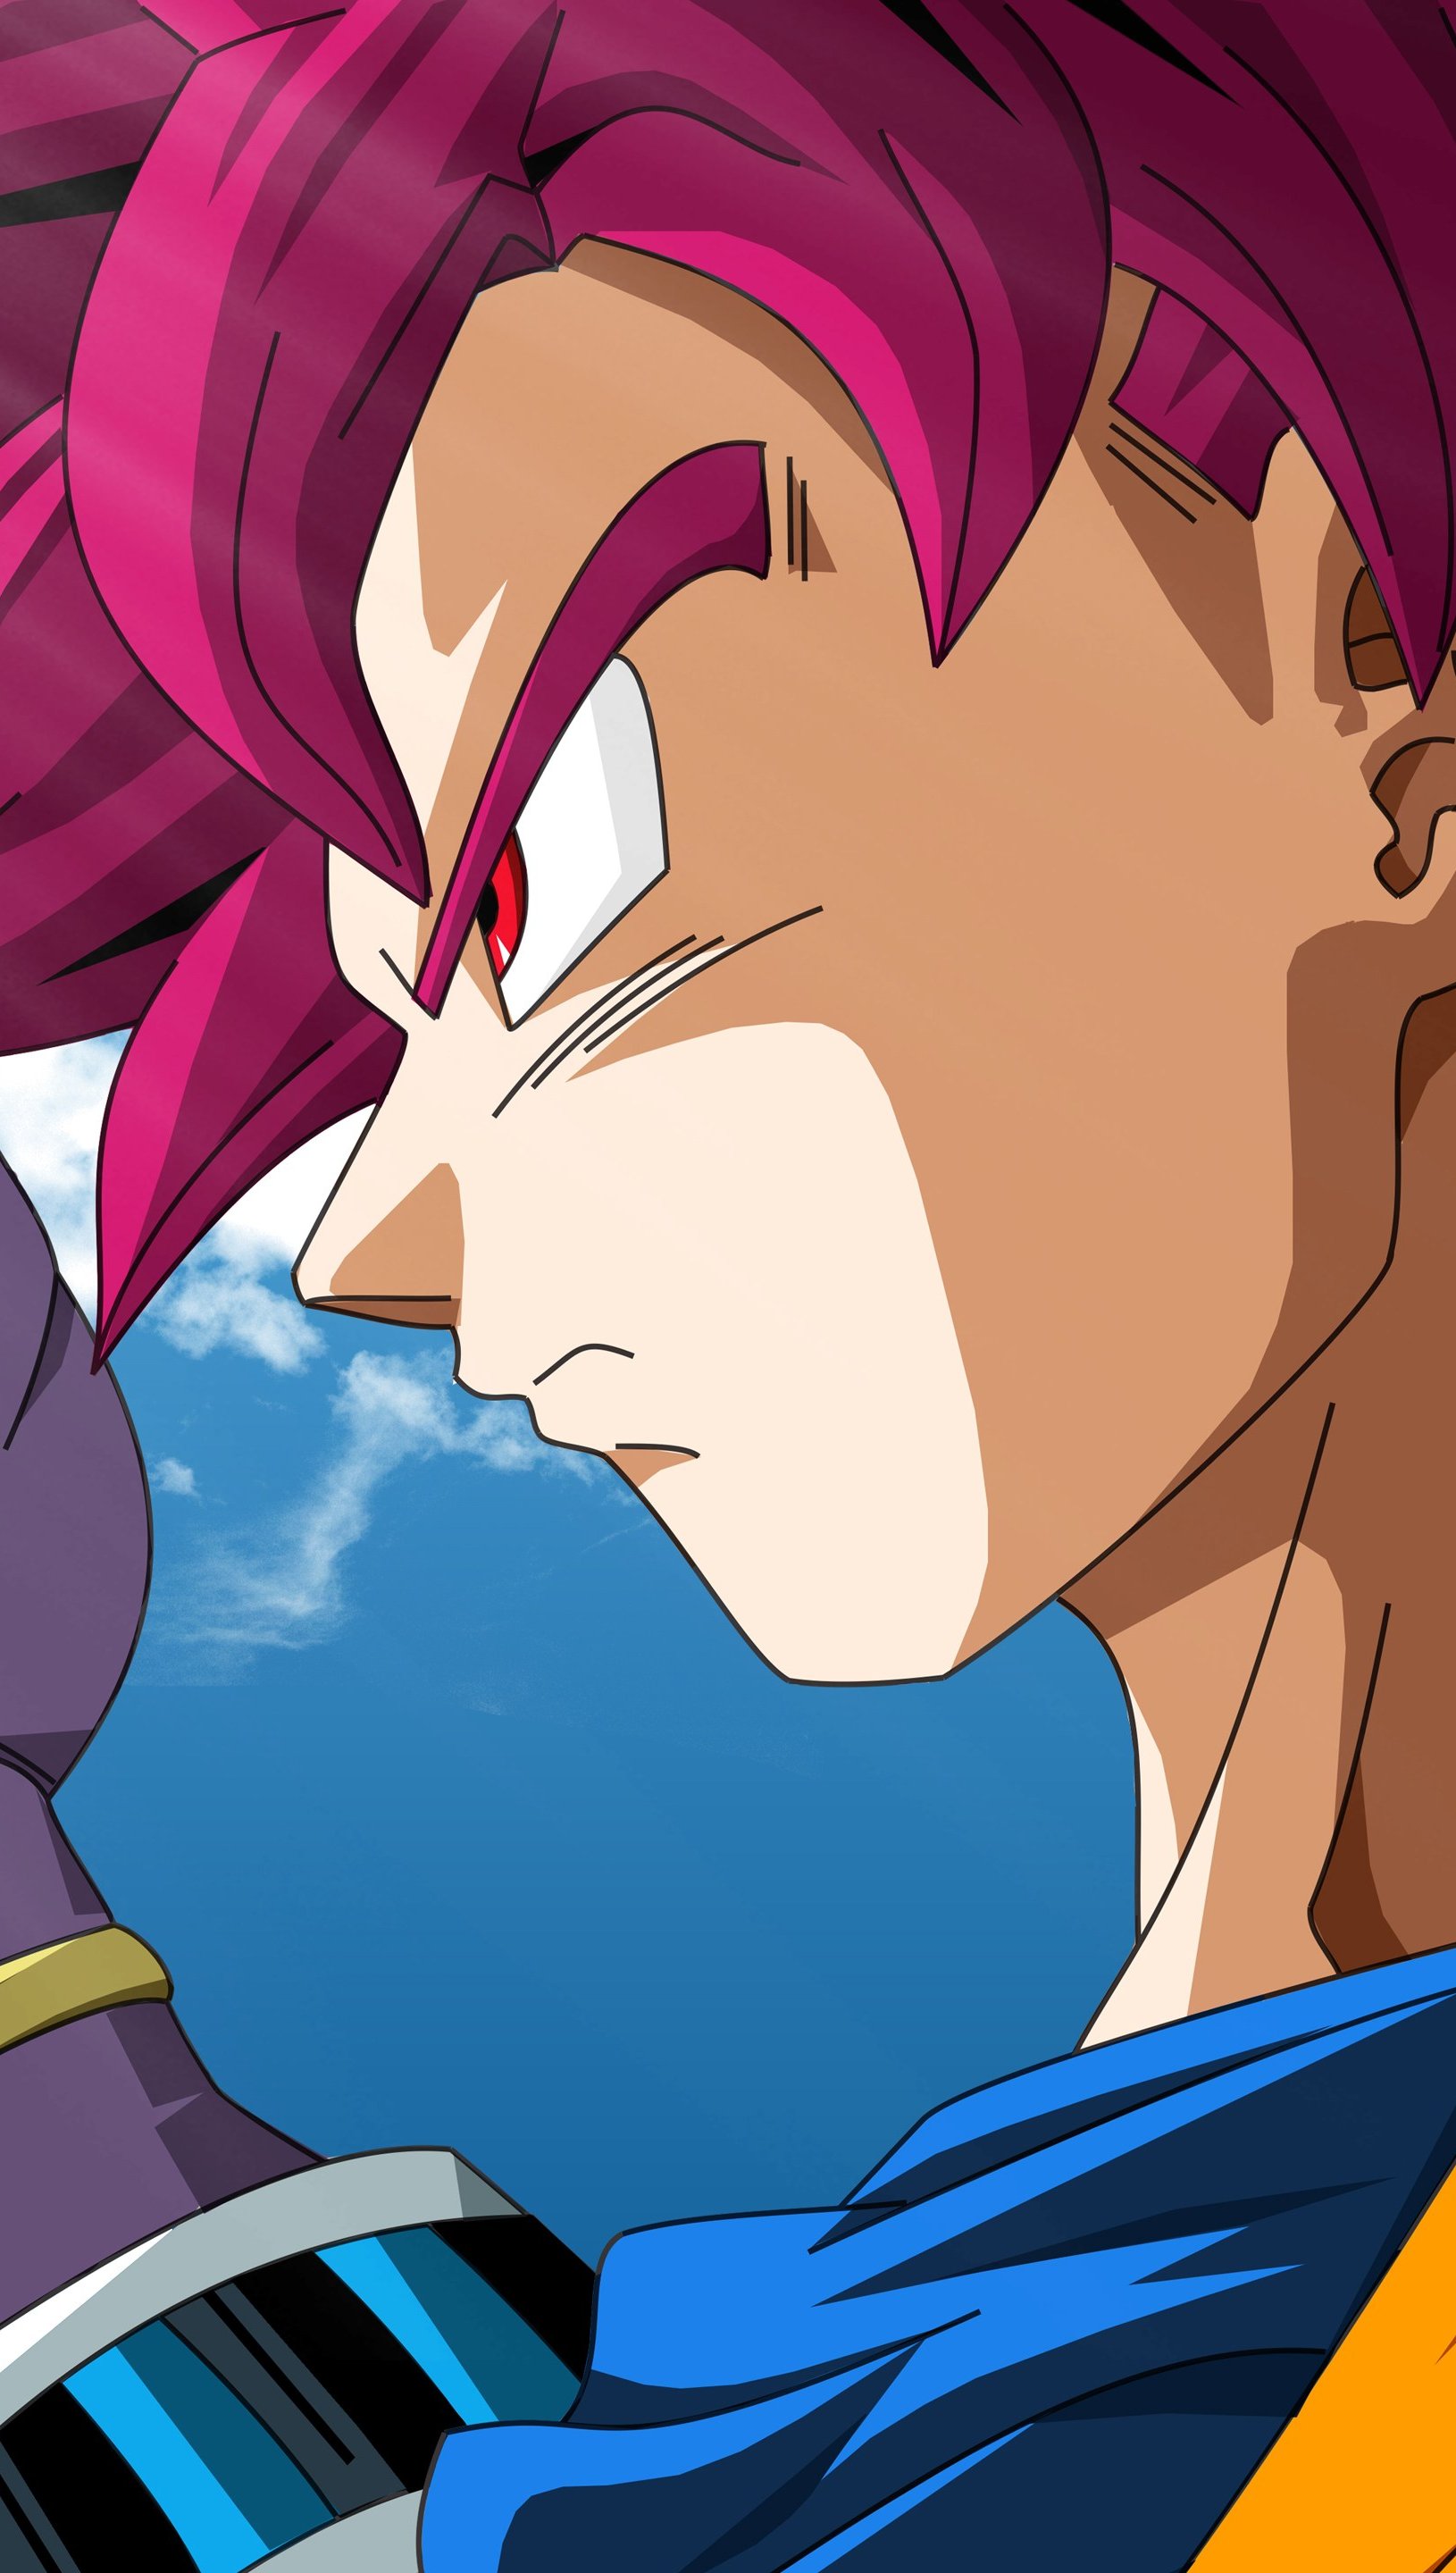 Beerus and Goku Super Saiyan God Anime Wallpaper 5k Ultra HD